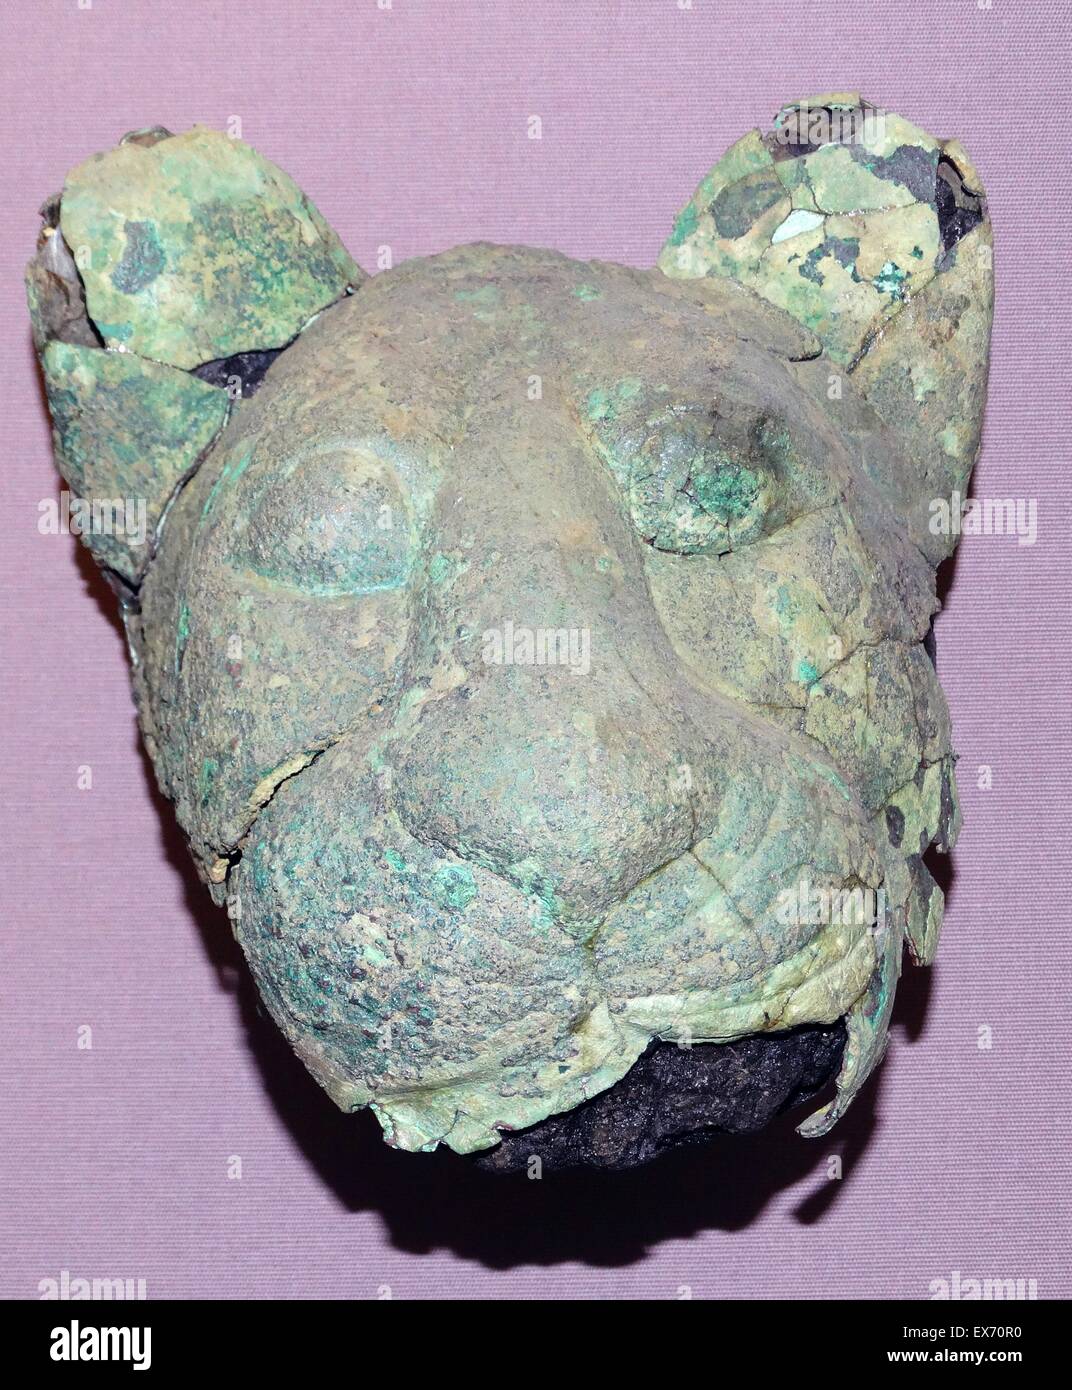 Aleación de cobre de dos cabezas de leones o cachorros. Modelos babilónico de leones, pueden haber actuado como guardián en cifras a la entrada al templo.2 milenios A.C. Foto de stock